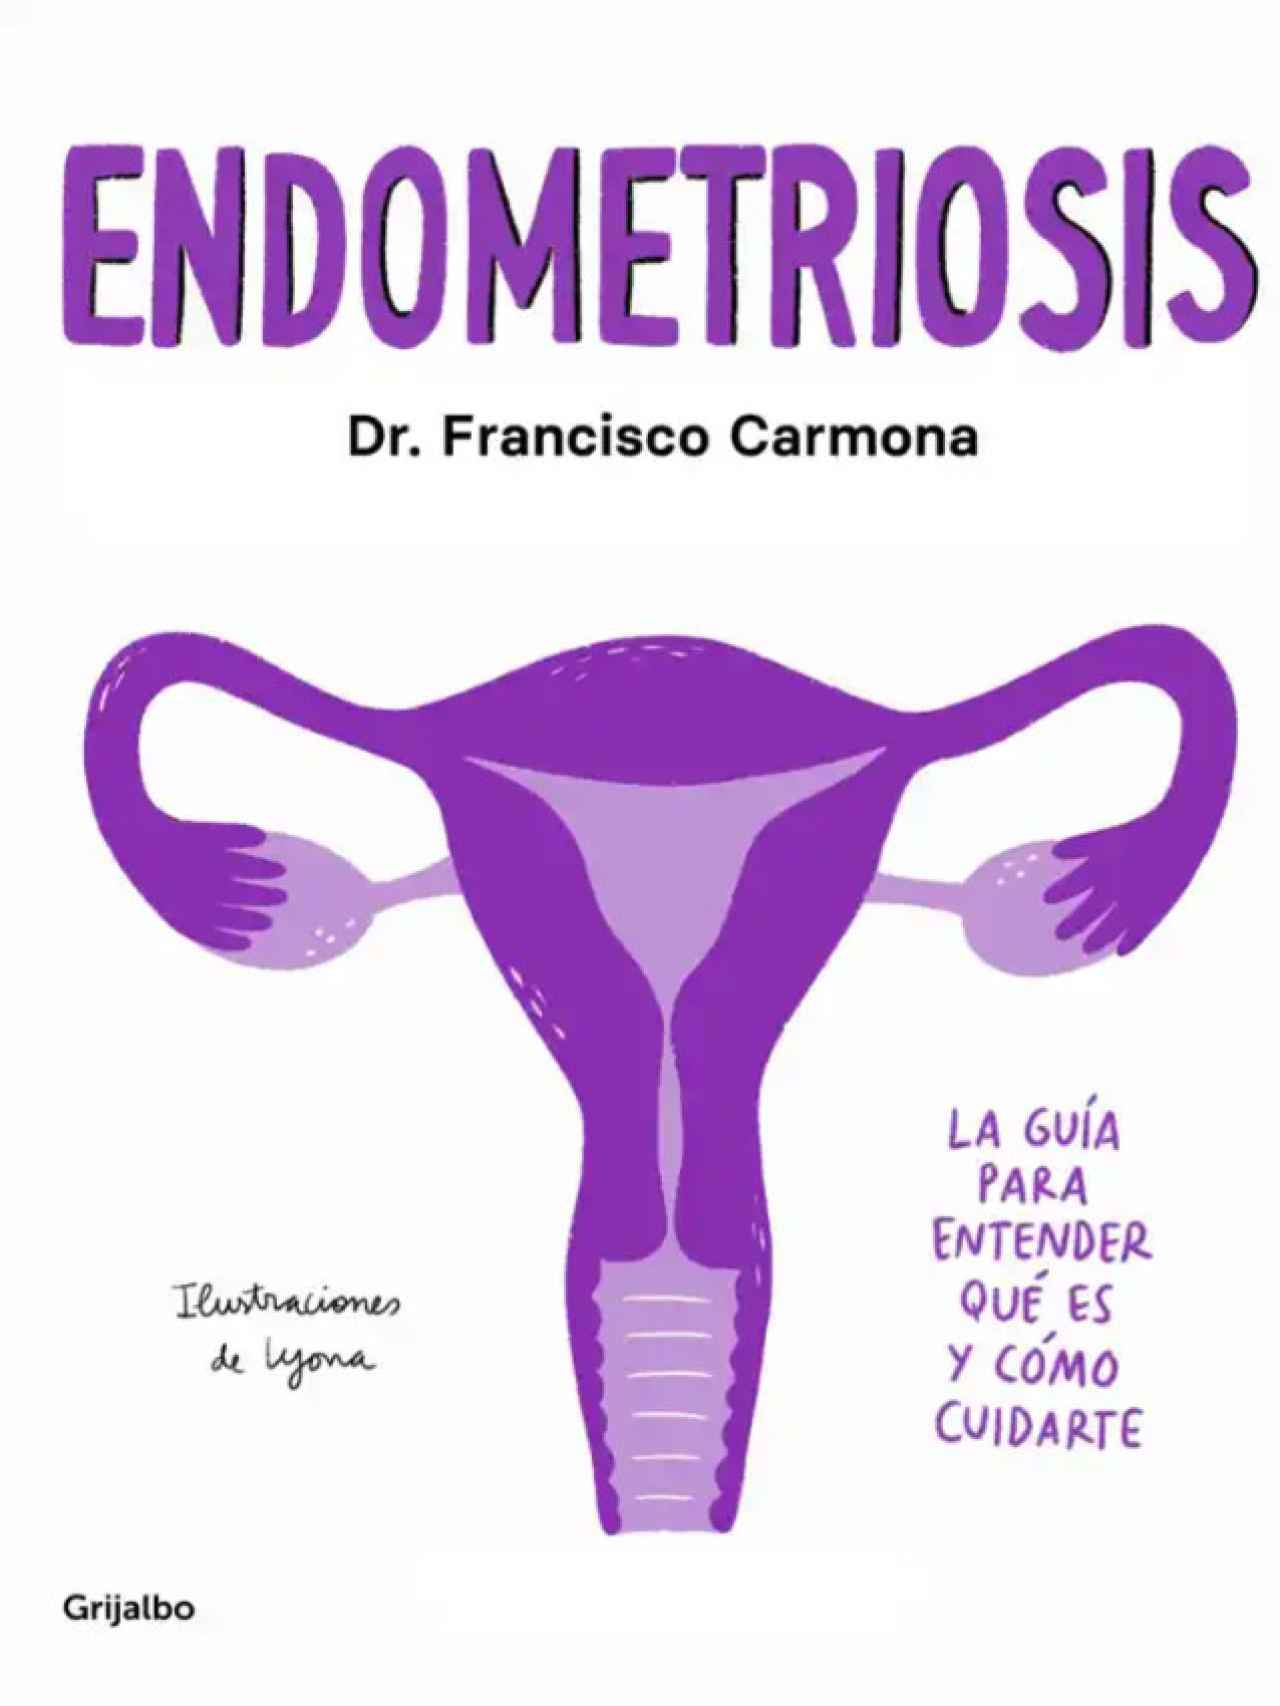 Portada del libro 'Endometriosis: La guía para entender qué es y cómo cuidarte'.